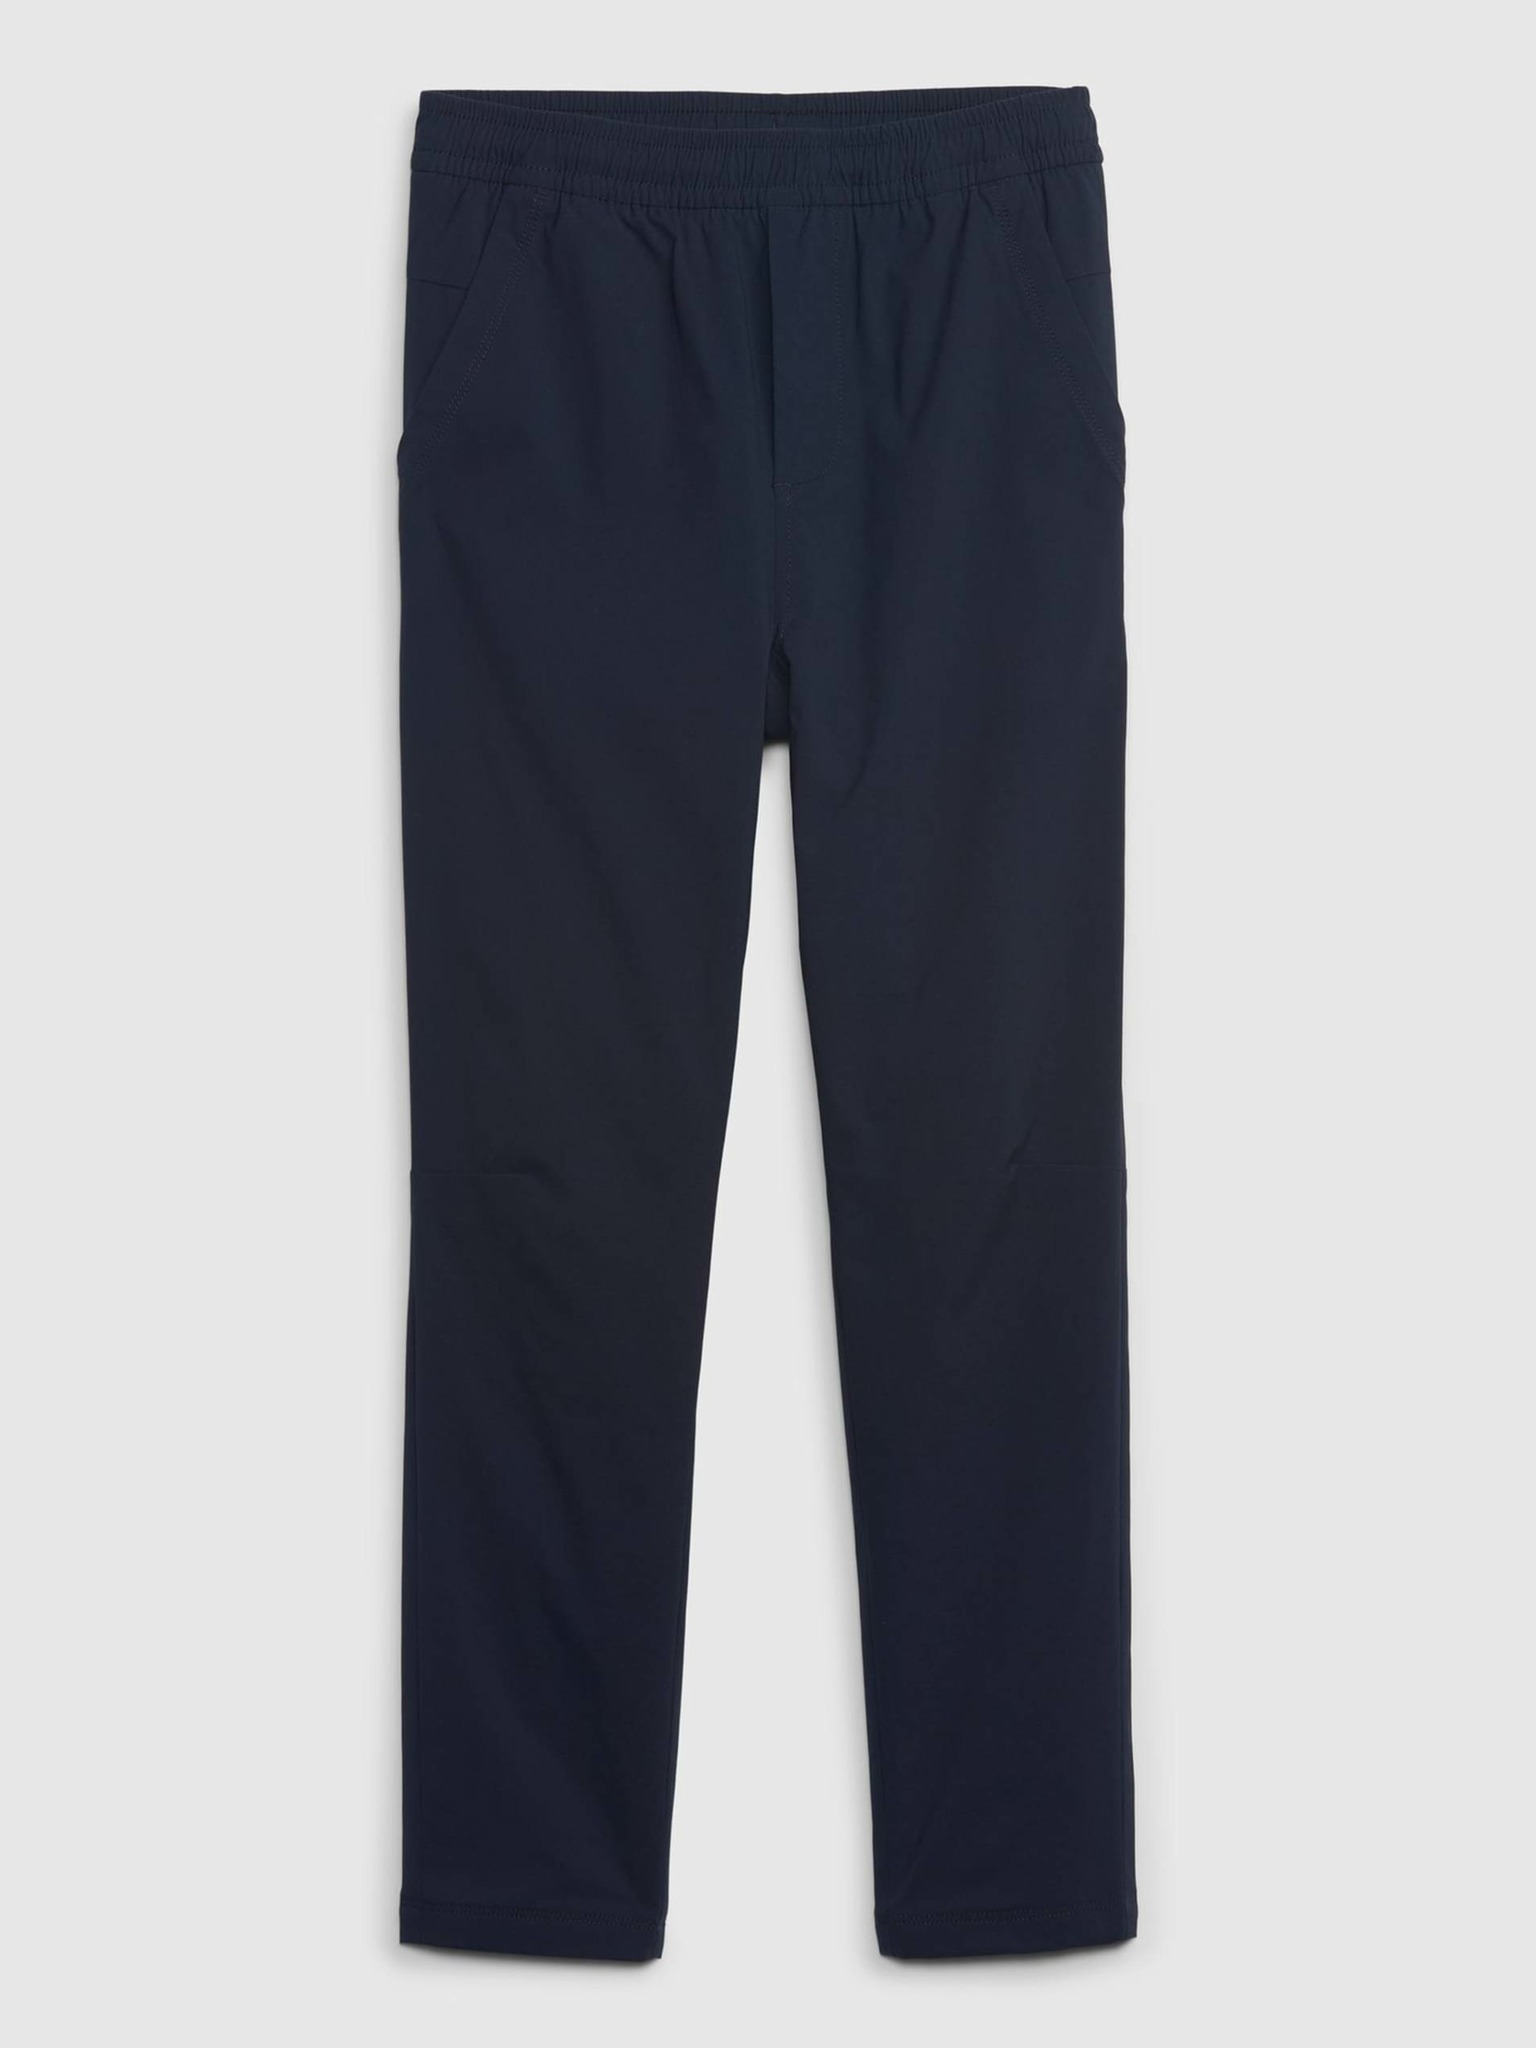 Fotografie Tmavě modré klučičí kalhoty zateplené GAP - 104-110